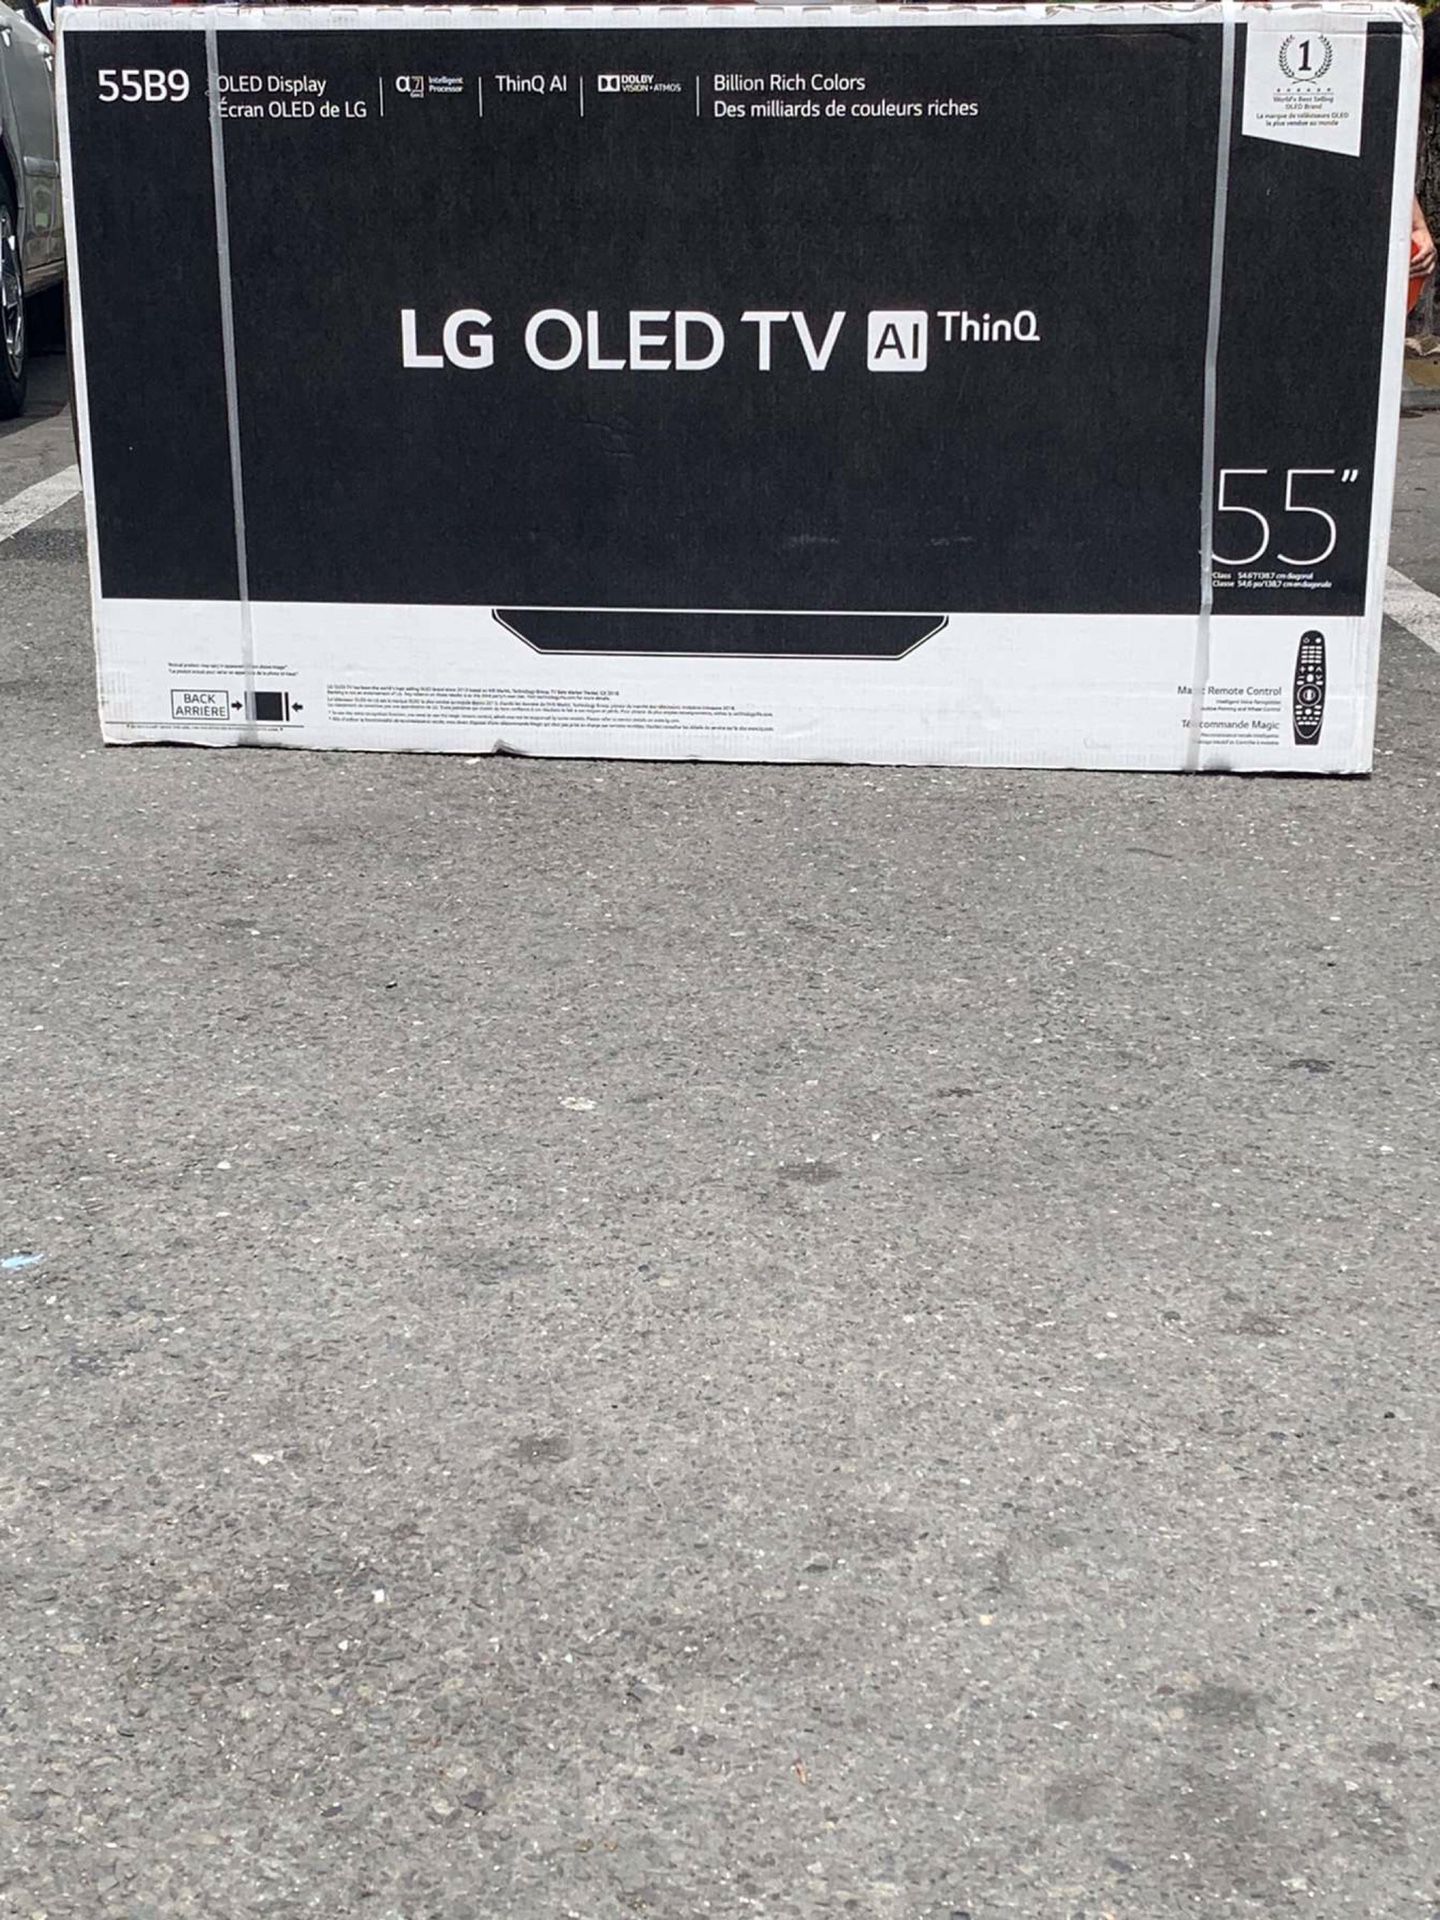 LG OLED TV A1 thinQ